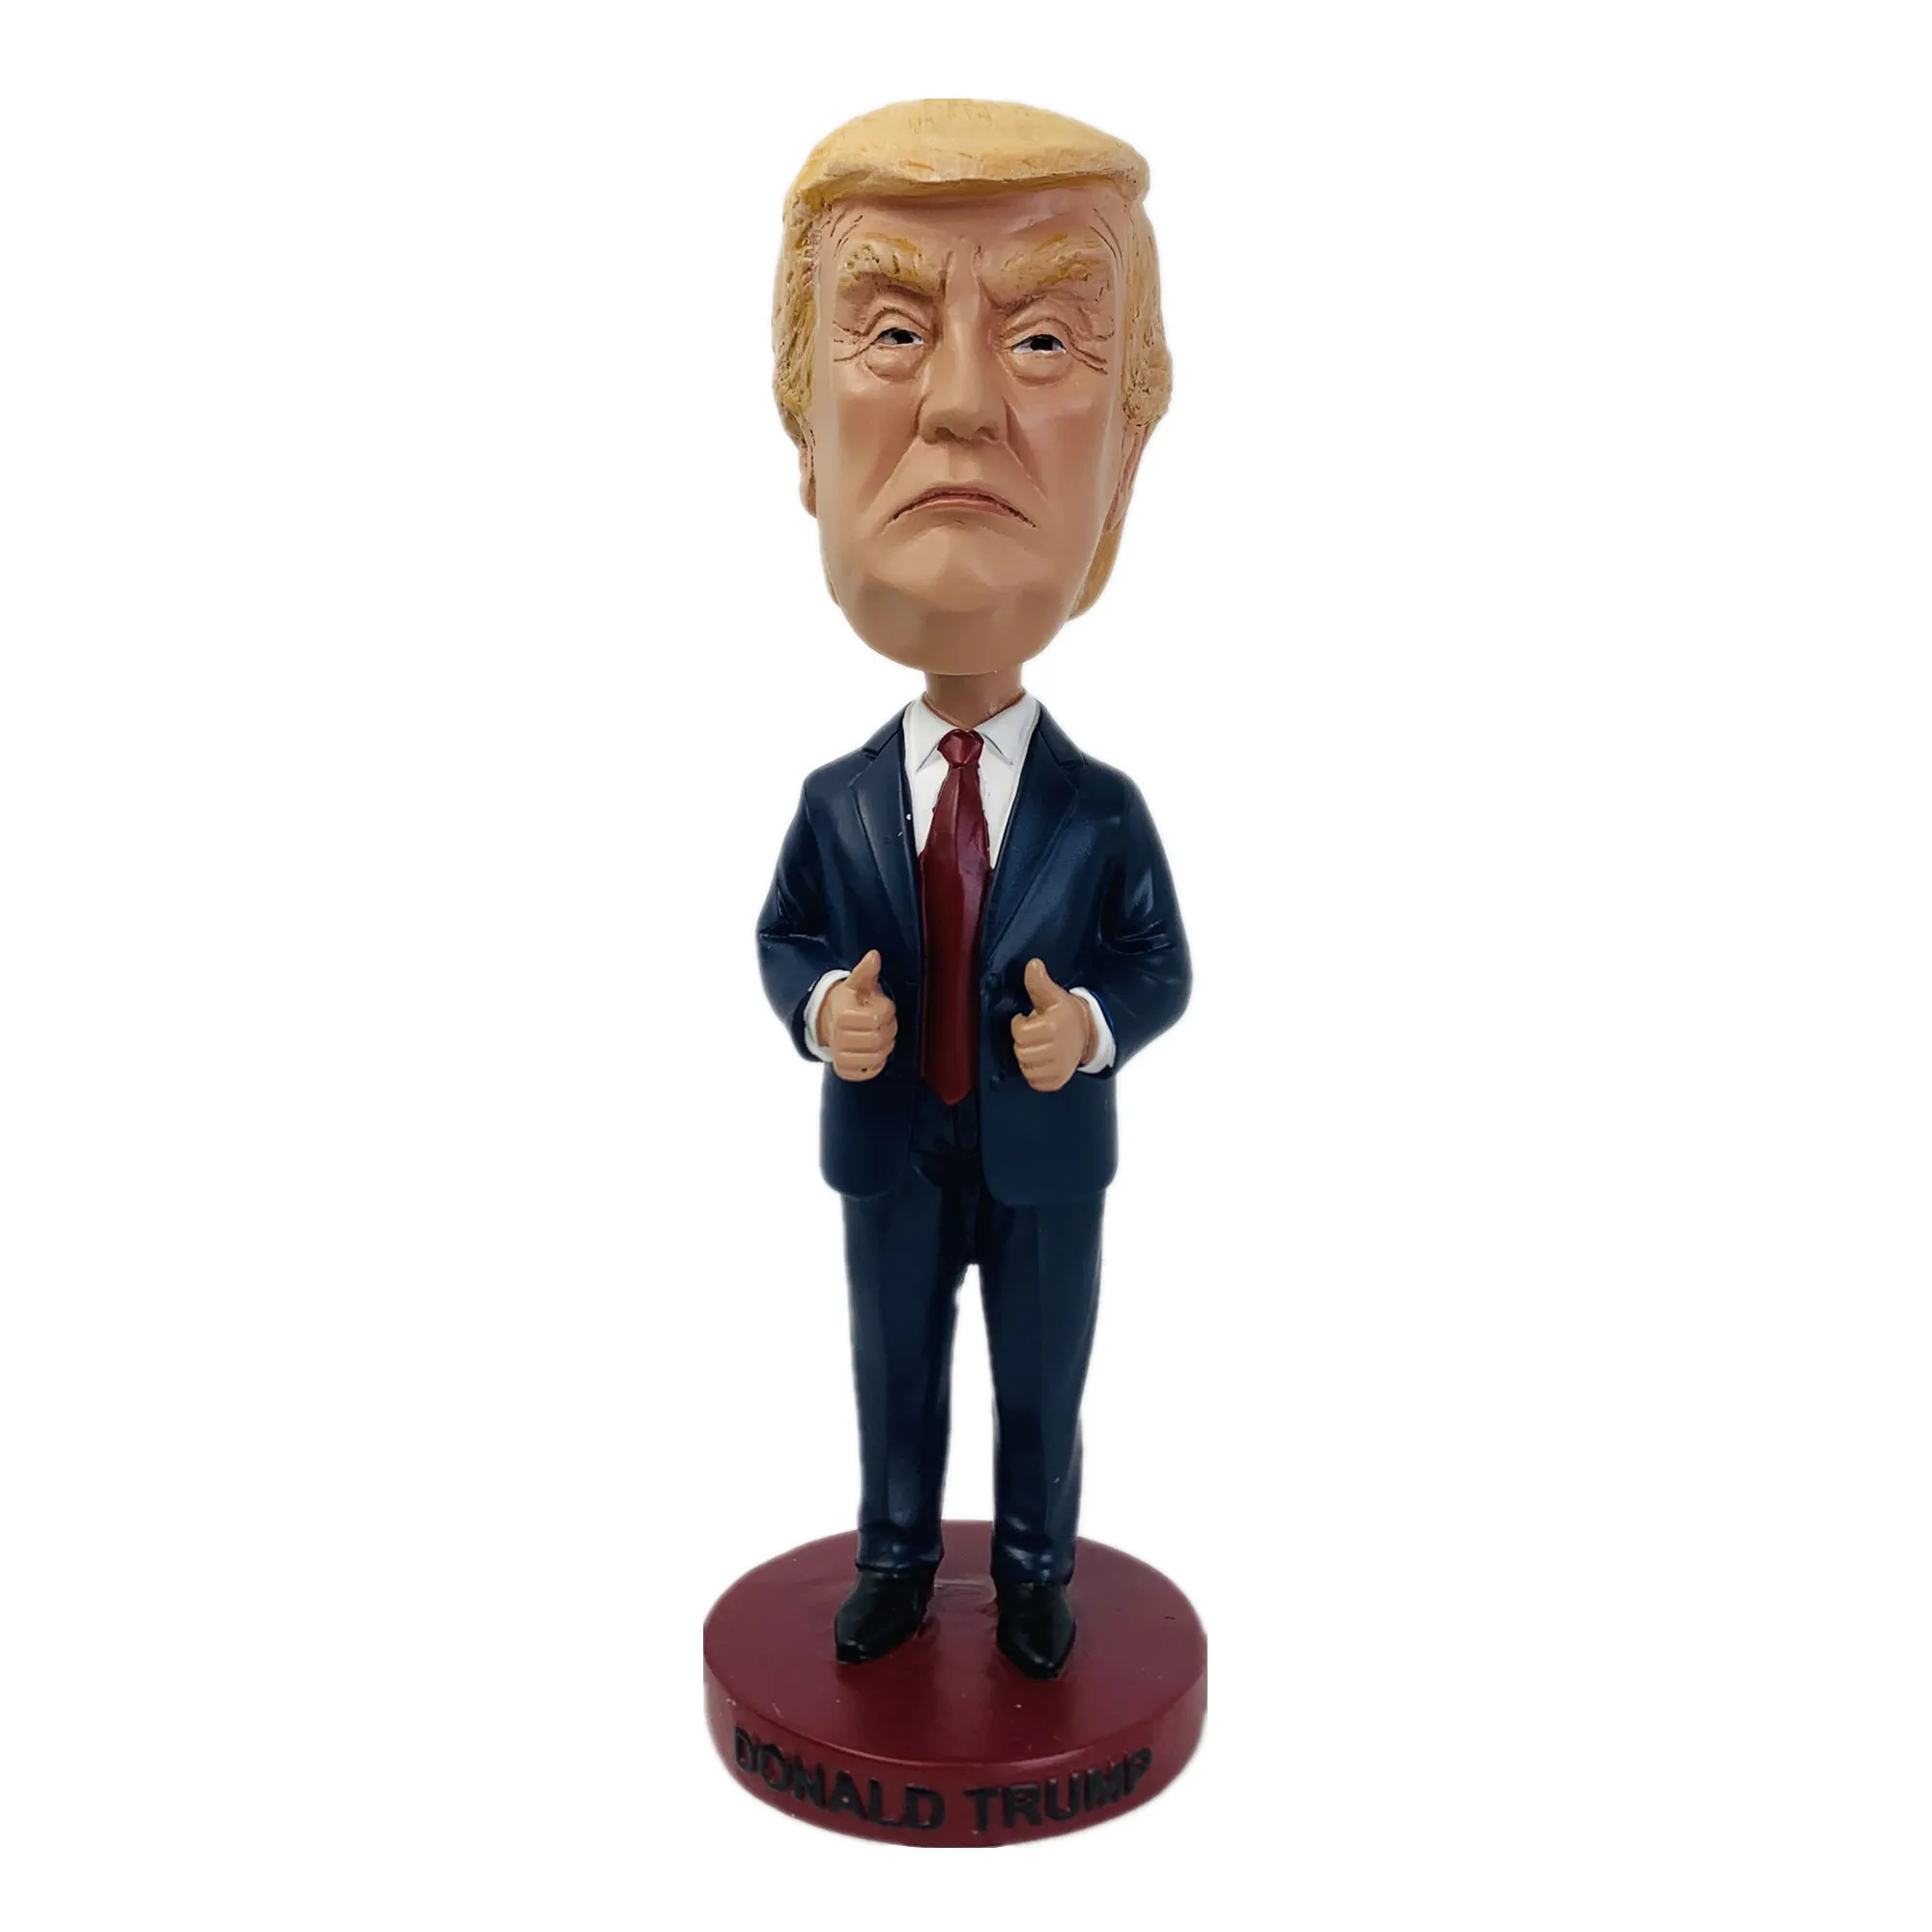 Objets décoratifs Figurines Donald Trump Bobble Head Doll Decoration Home Decoration USA Trump Shaking Head Dolls Gift Trump Bobblehead America Président 221011